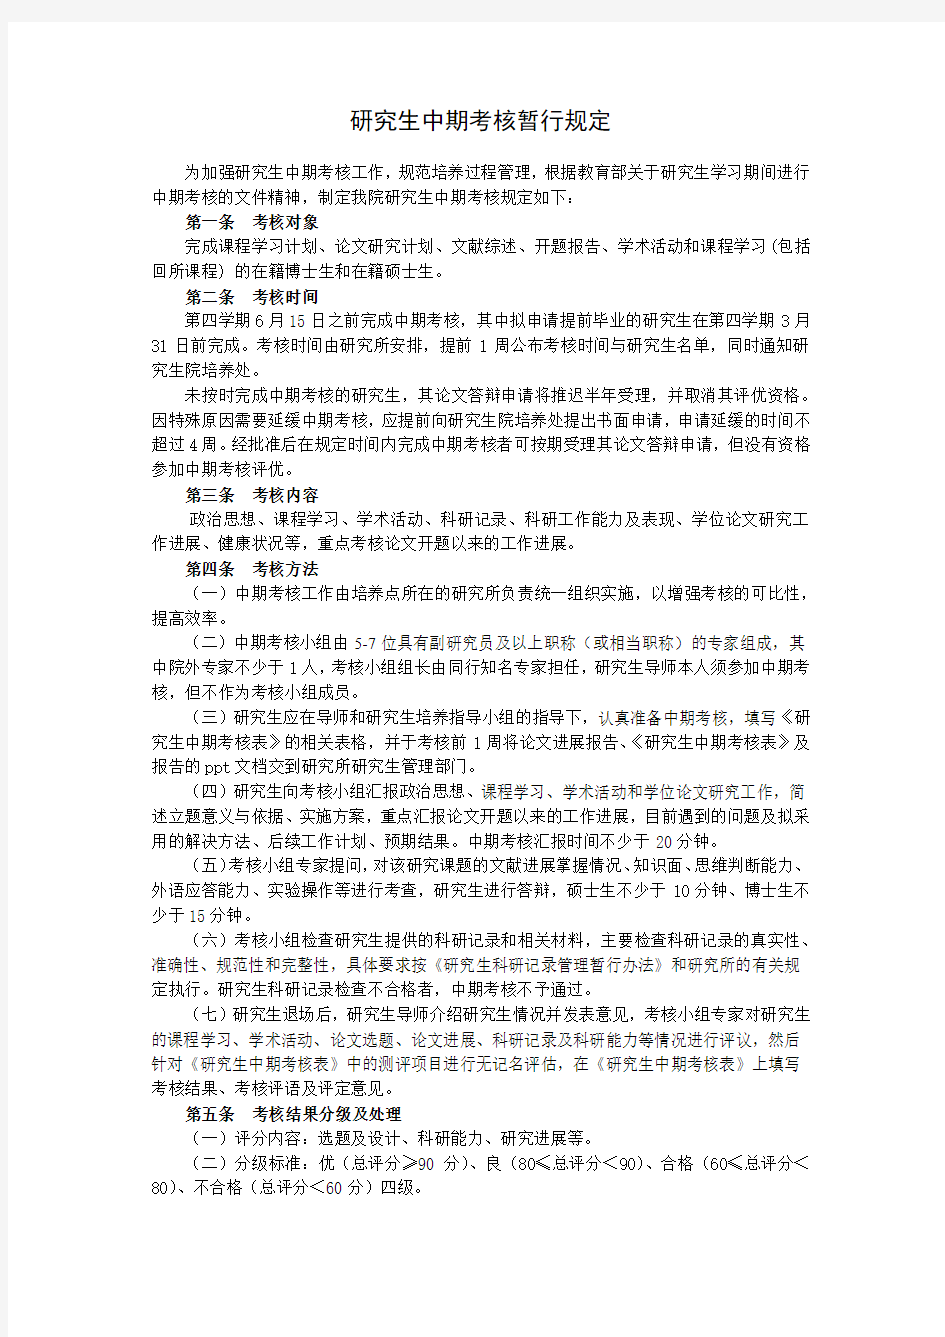 中国农业科学院研究生中期考核暂行规定(2017年)